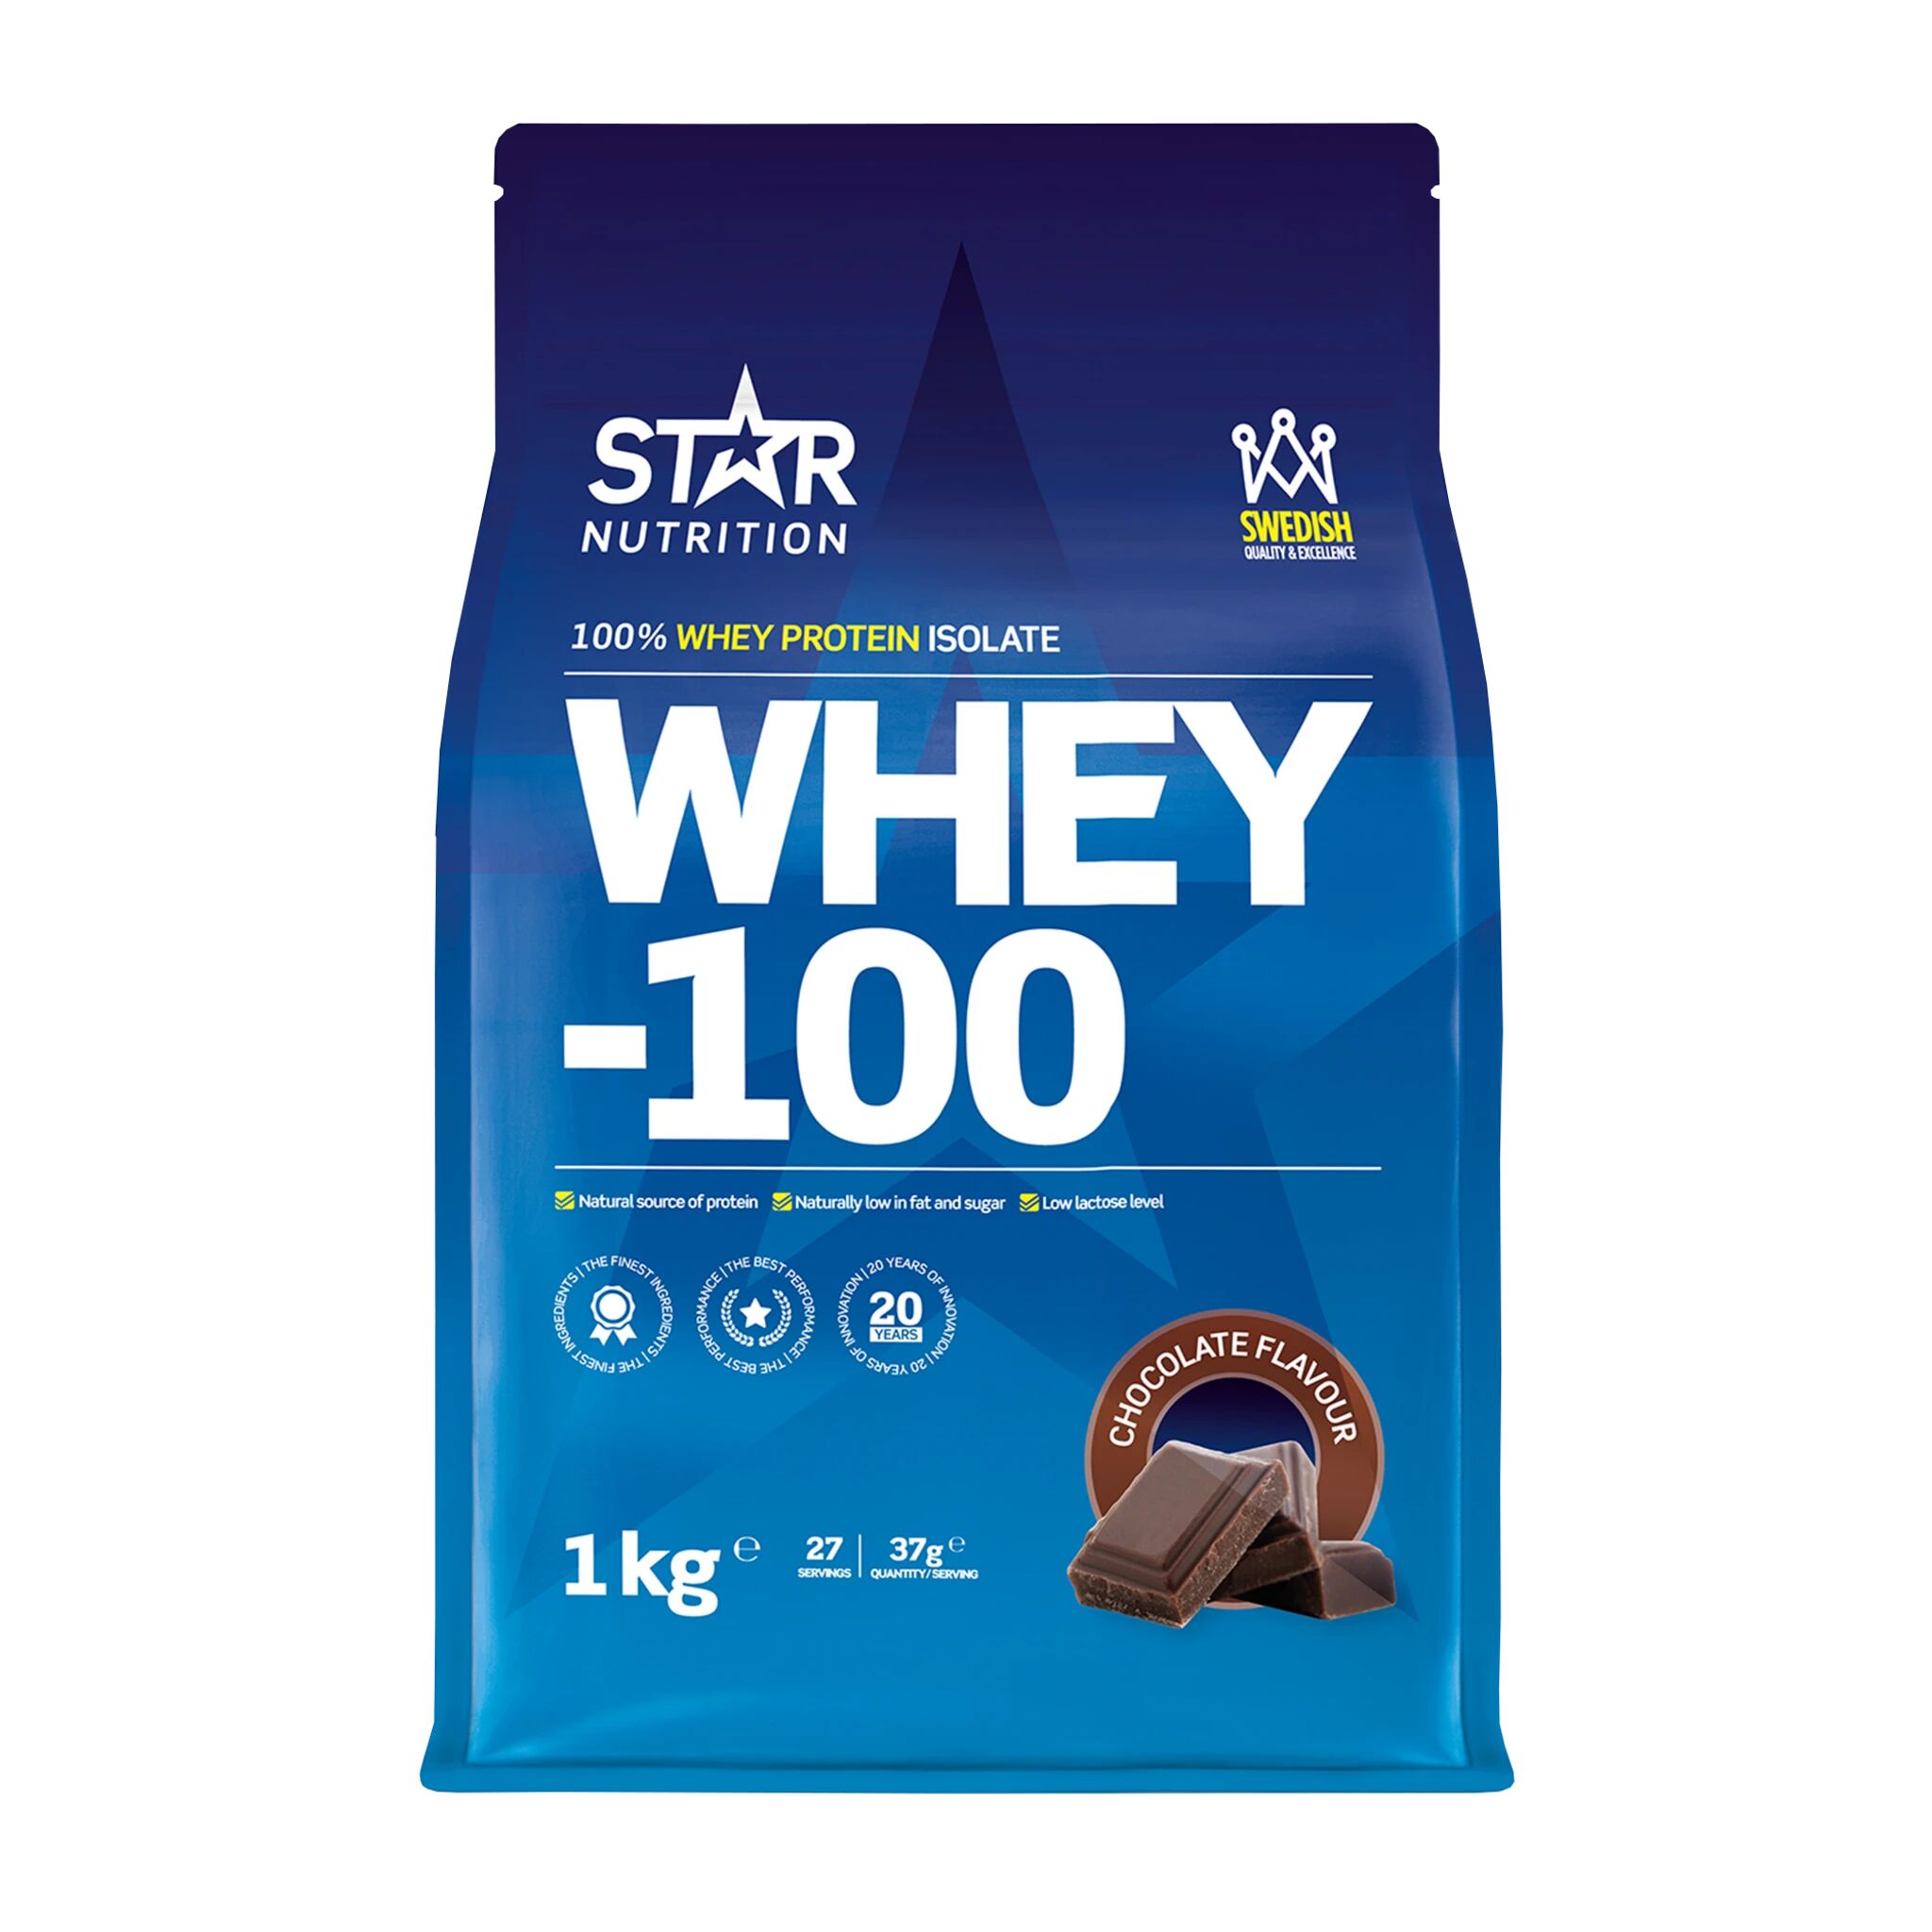 Star Nutrition Whey 100, myseproteinisolat 1000g CHOKLAD